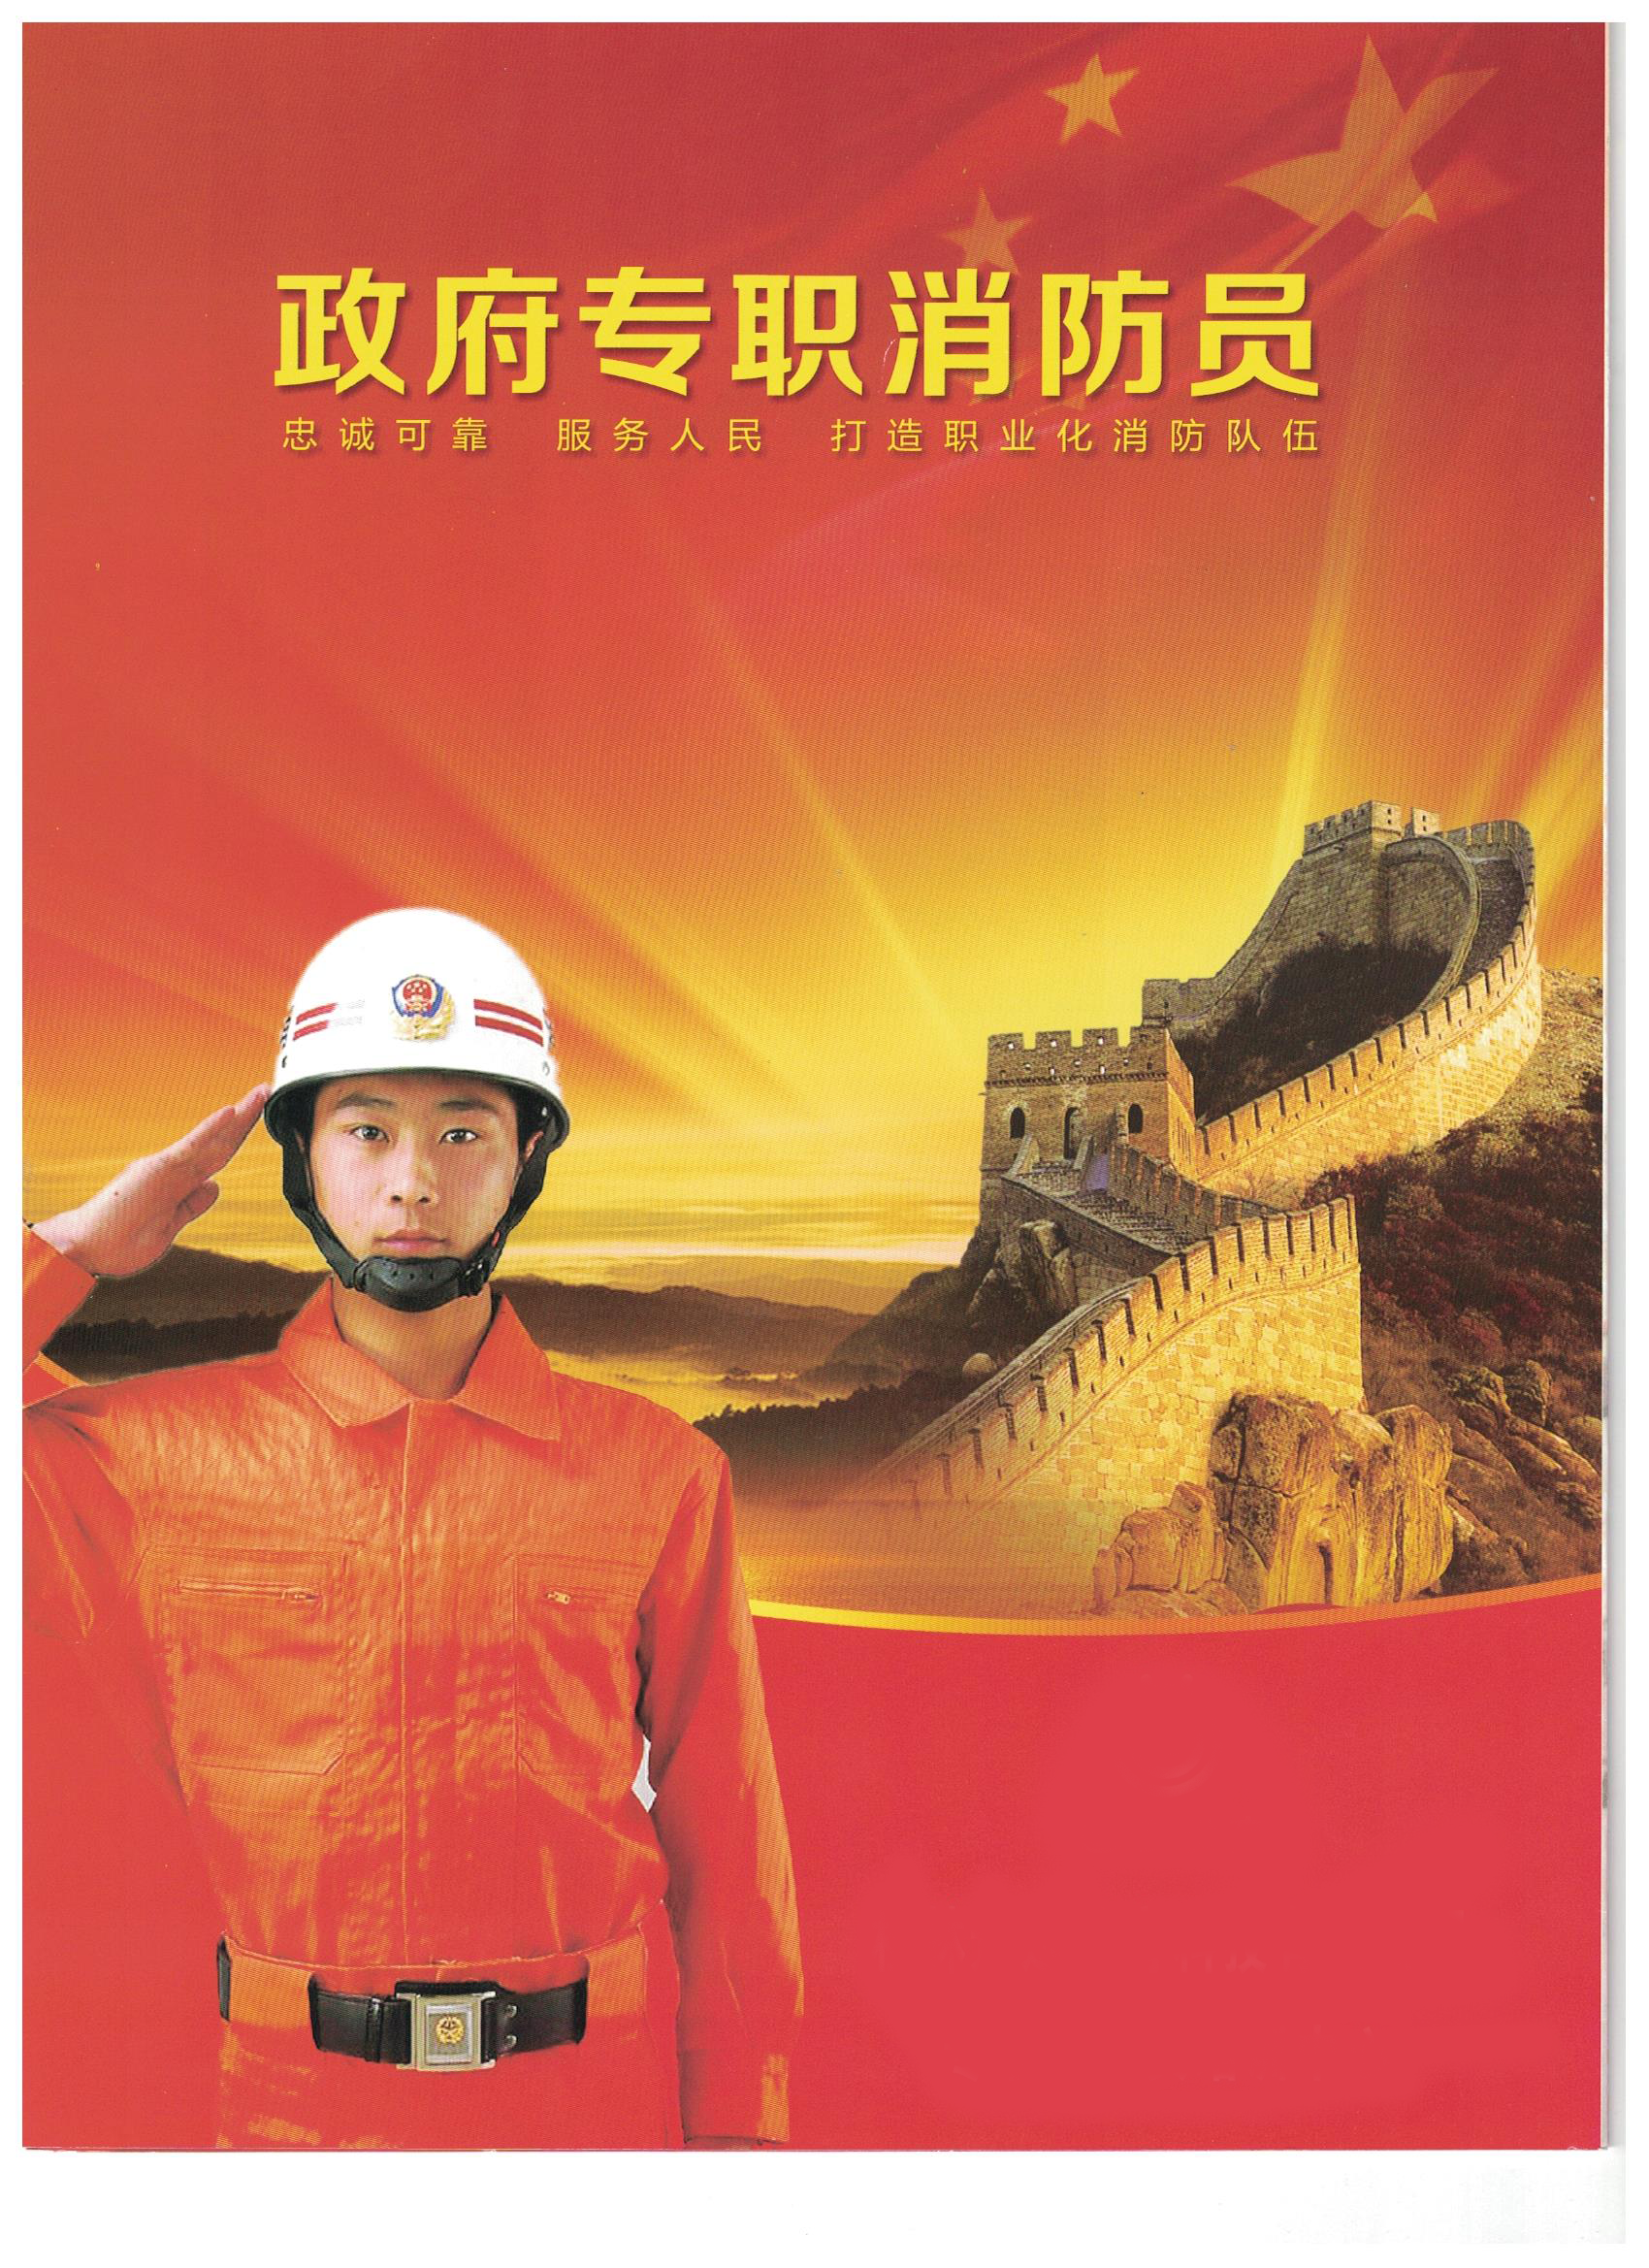 一级注册消防工程师招聘信息网石家庄消防工程师招聘  第2张